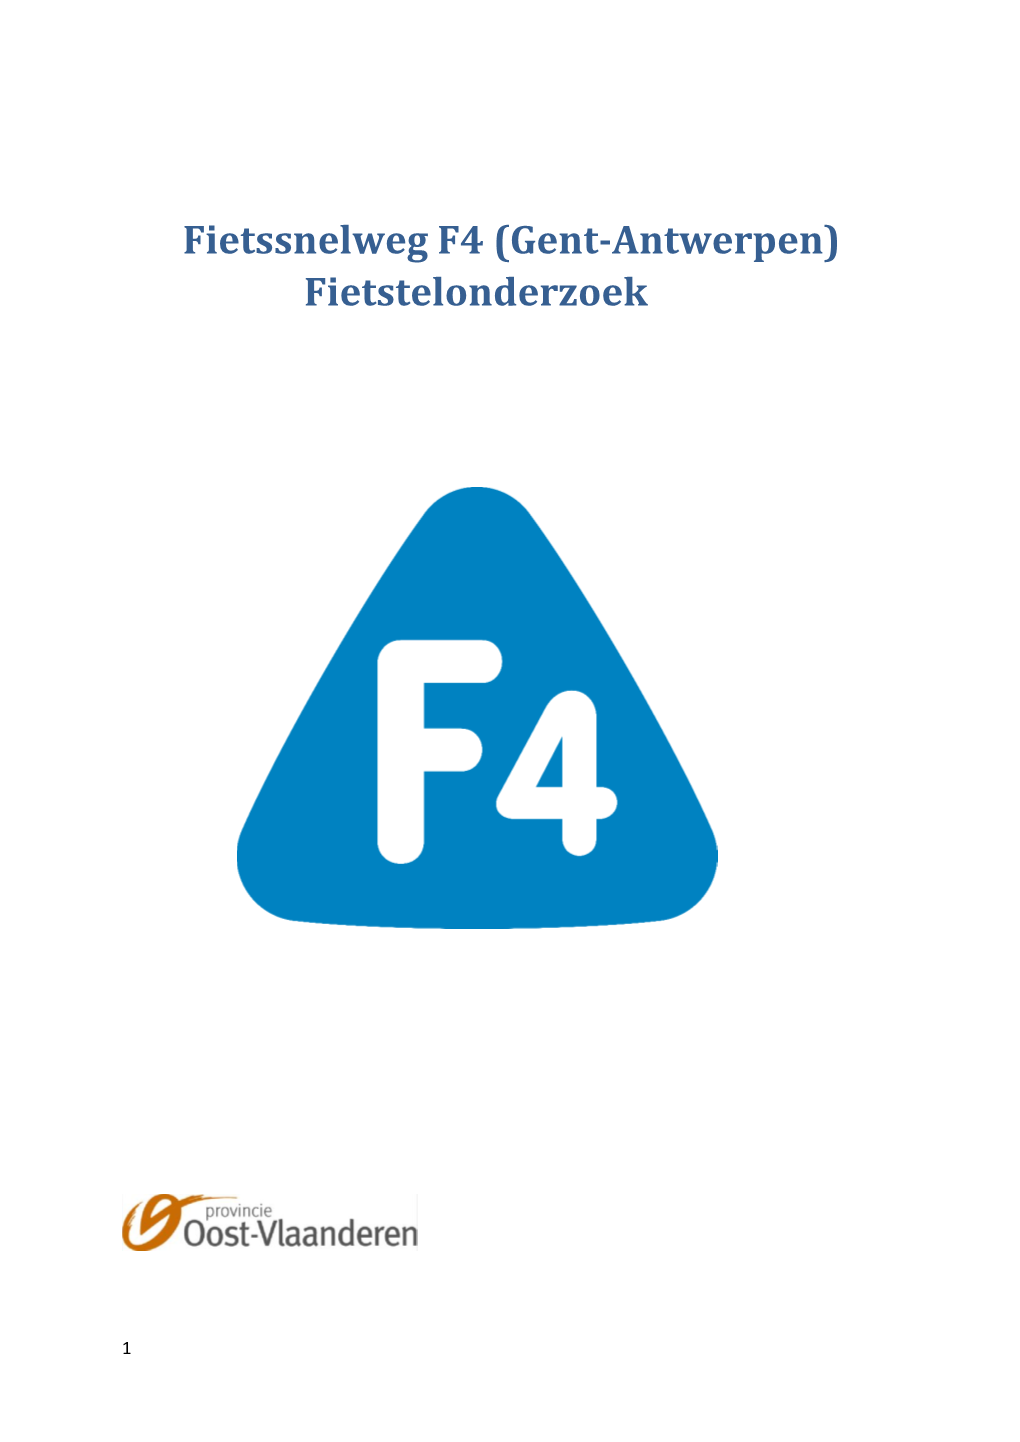 Fietssnelweg F4 (Gent-Antwerpen) Fietstelonderzoek